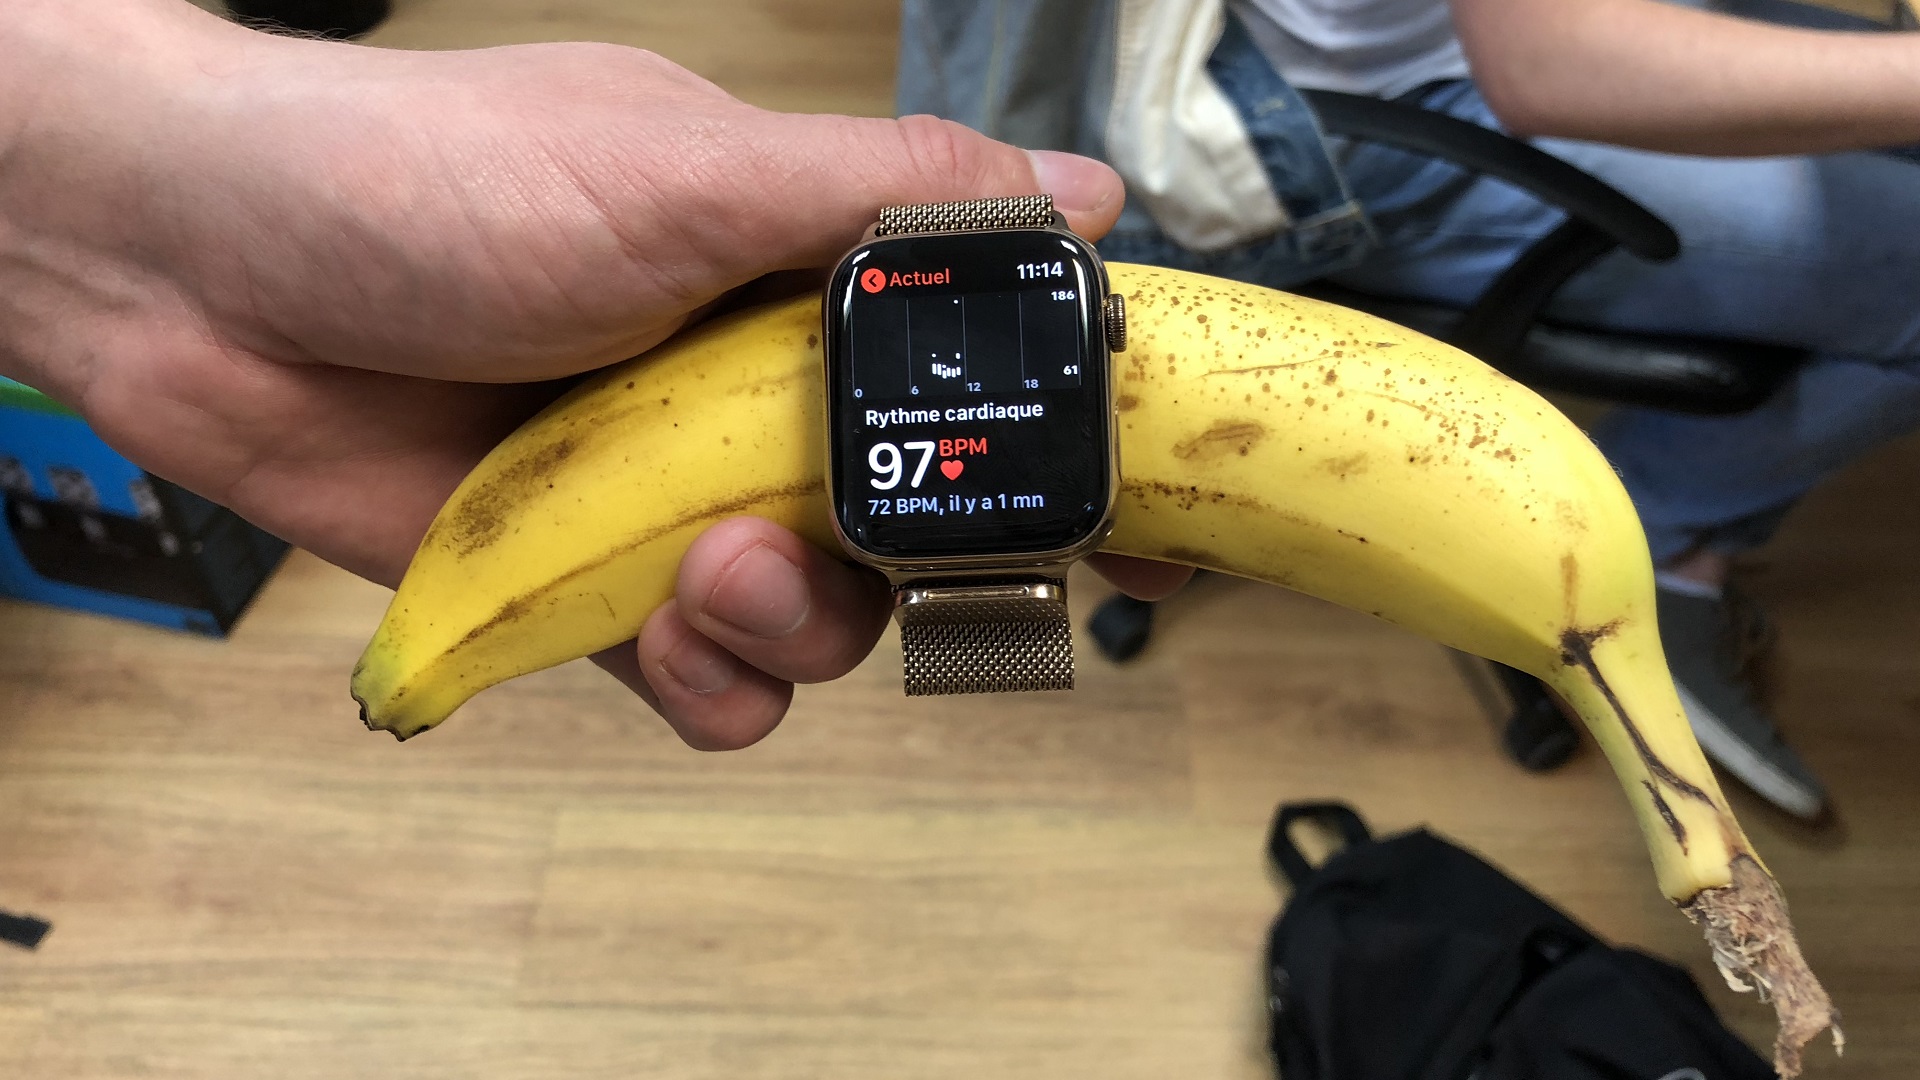 Pourquoi la banane a un rythme cardiaque (selon les montres